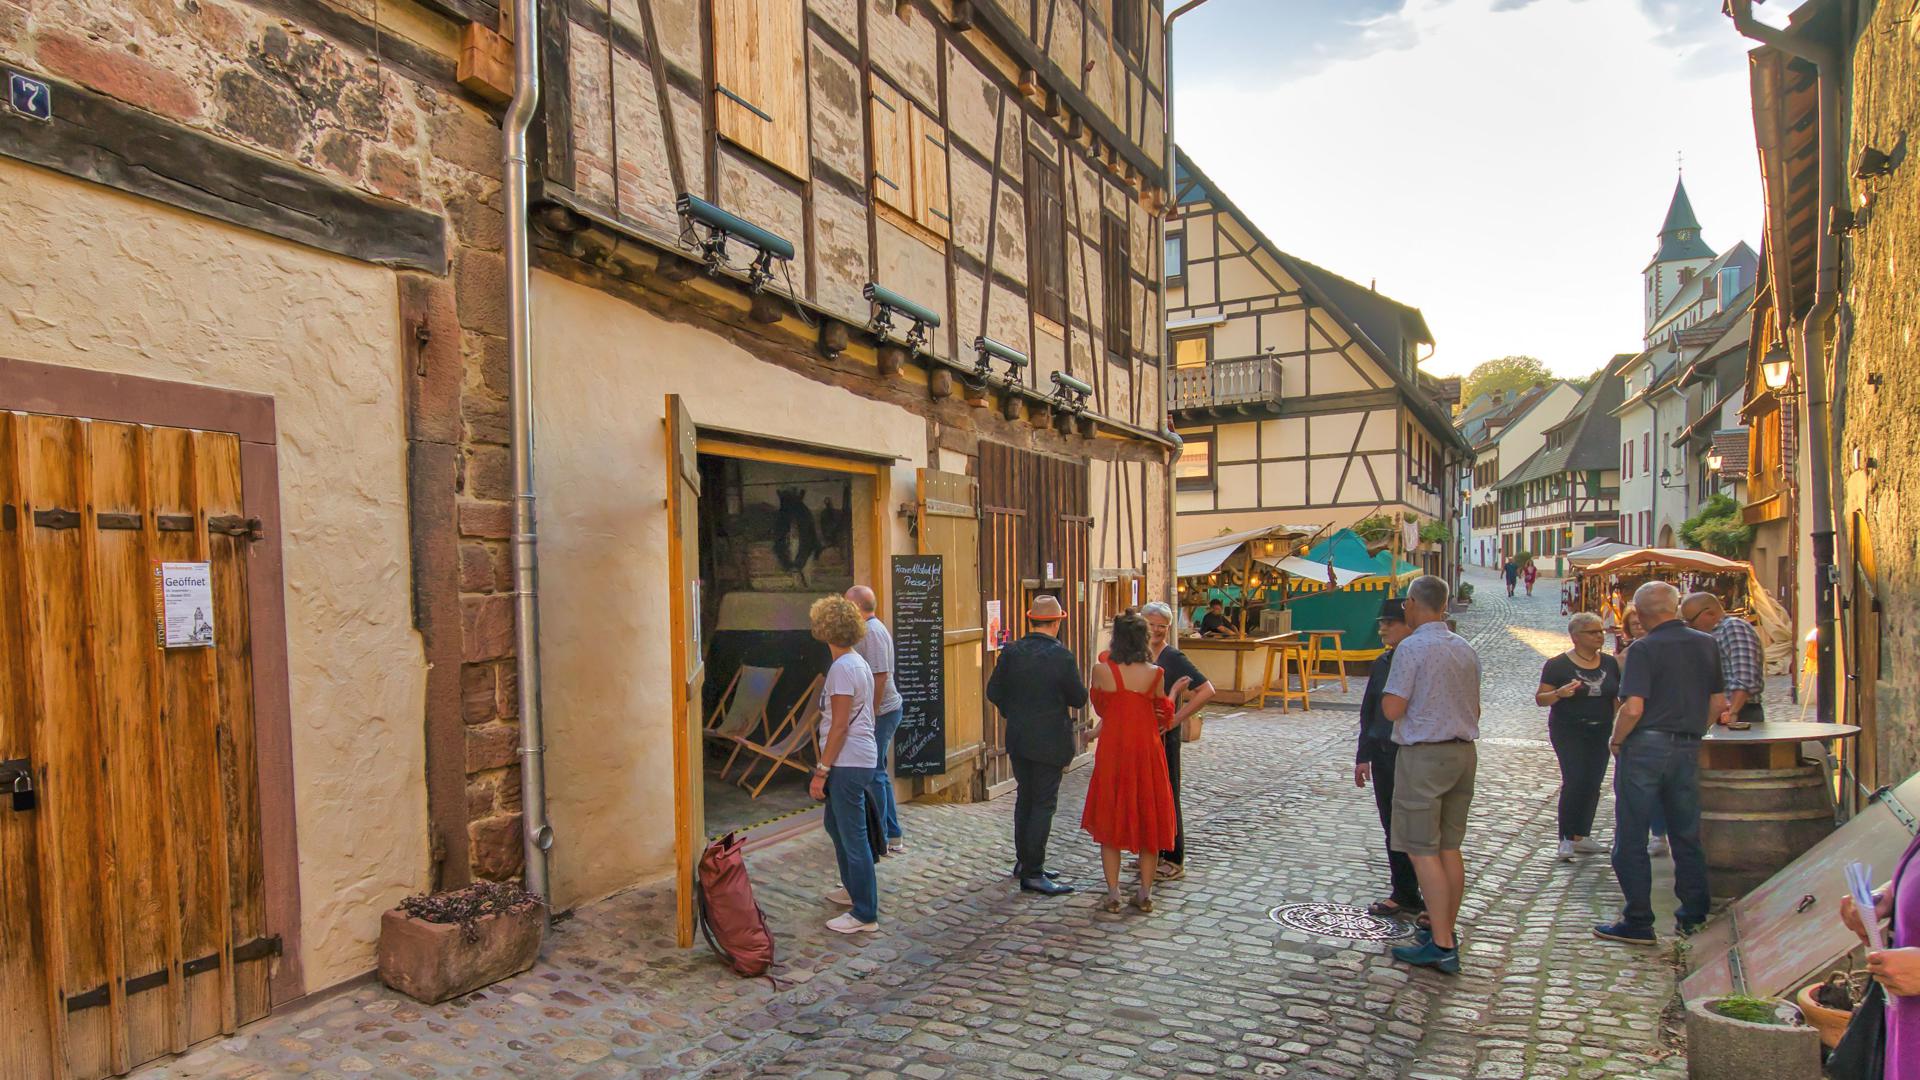 Beim Altstadtfest in Gernsbach verwandelt sich der historische Stadtkern traditionell in eine große Flaniermeile. Das sind die Eindrücke des ersten Abends. 